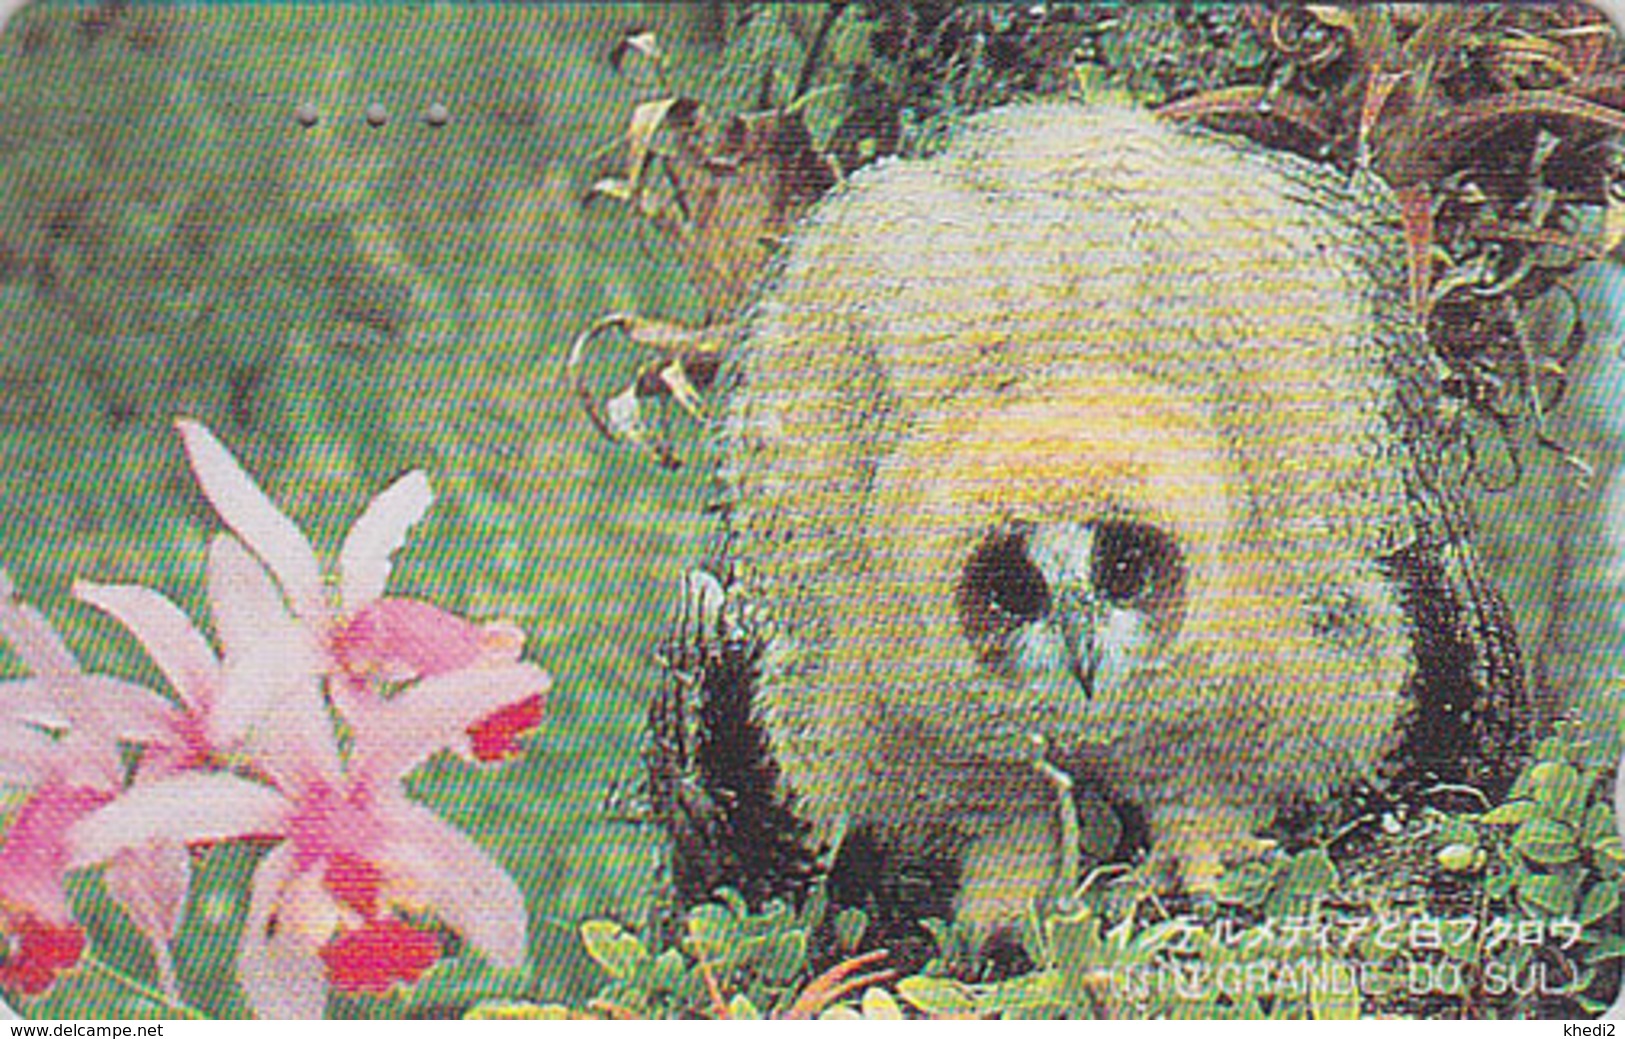 Télécarte Japon / 110-011 - Animal OISEAU - HIBOU & Fleur ORCHIDEE - OWL BIRD & ORCHID Flower Japan Phonecard - 4155 - Hiboux & Chouettes